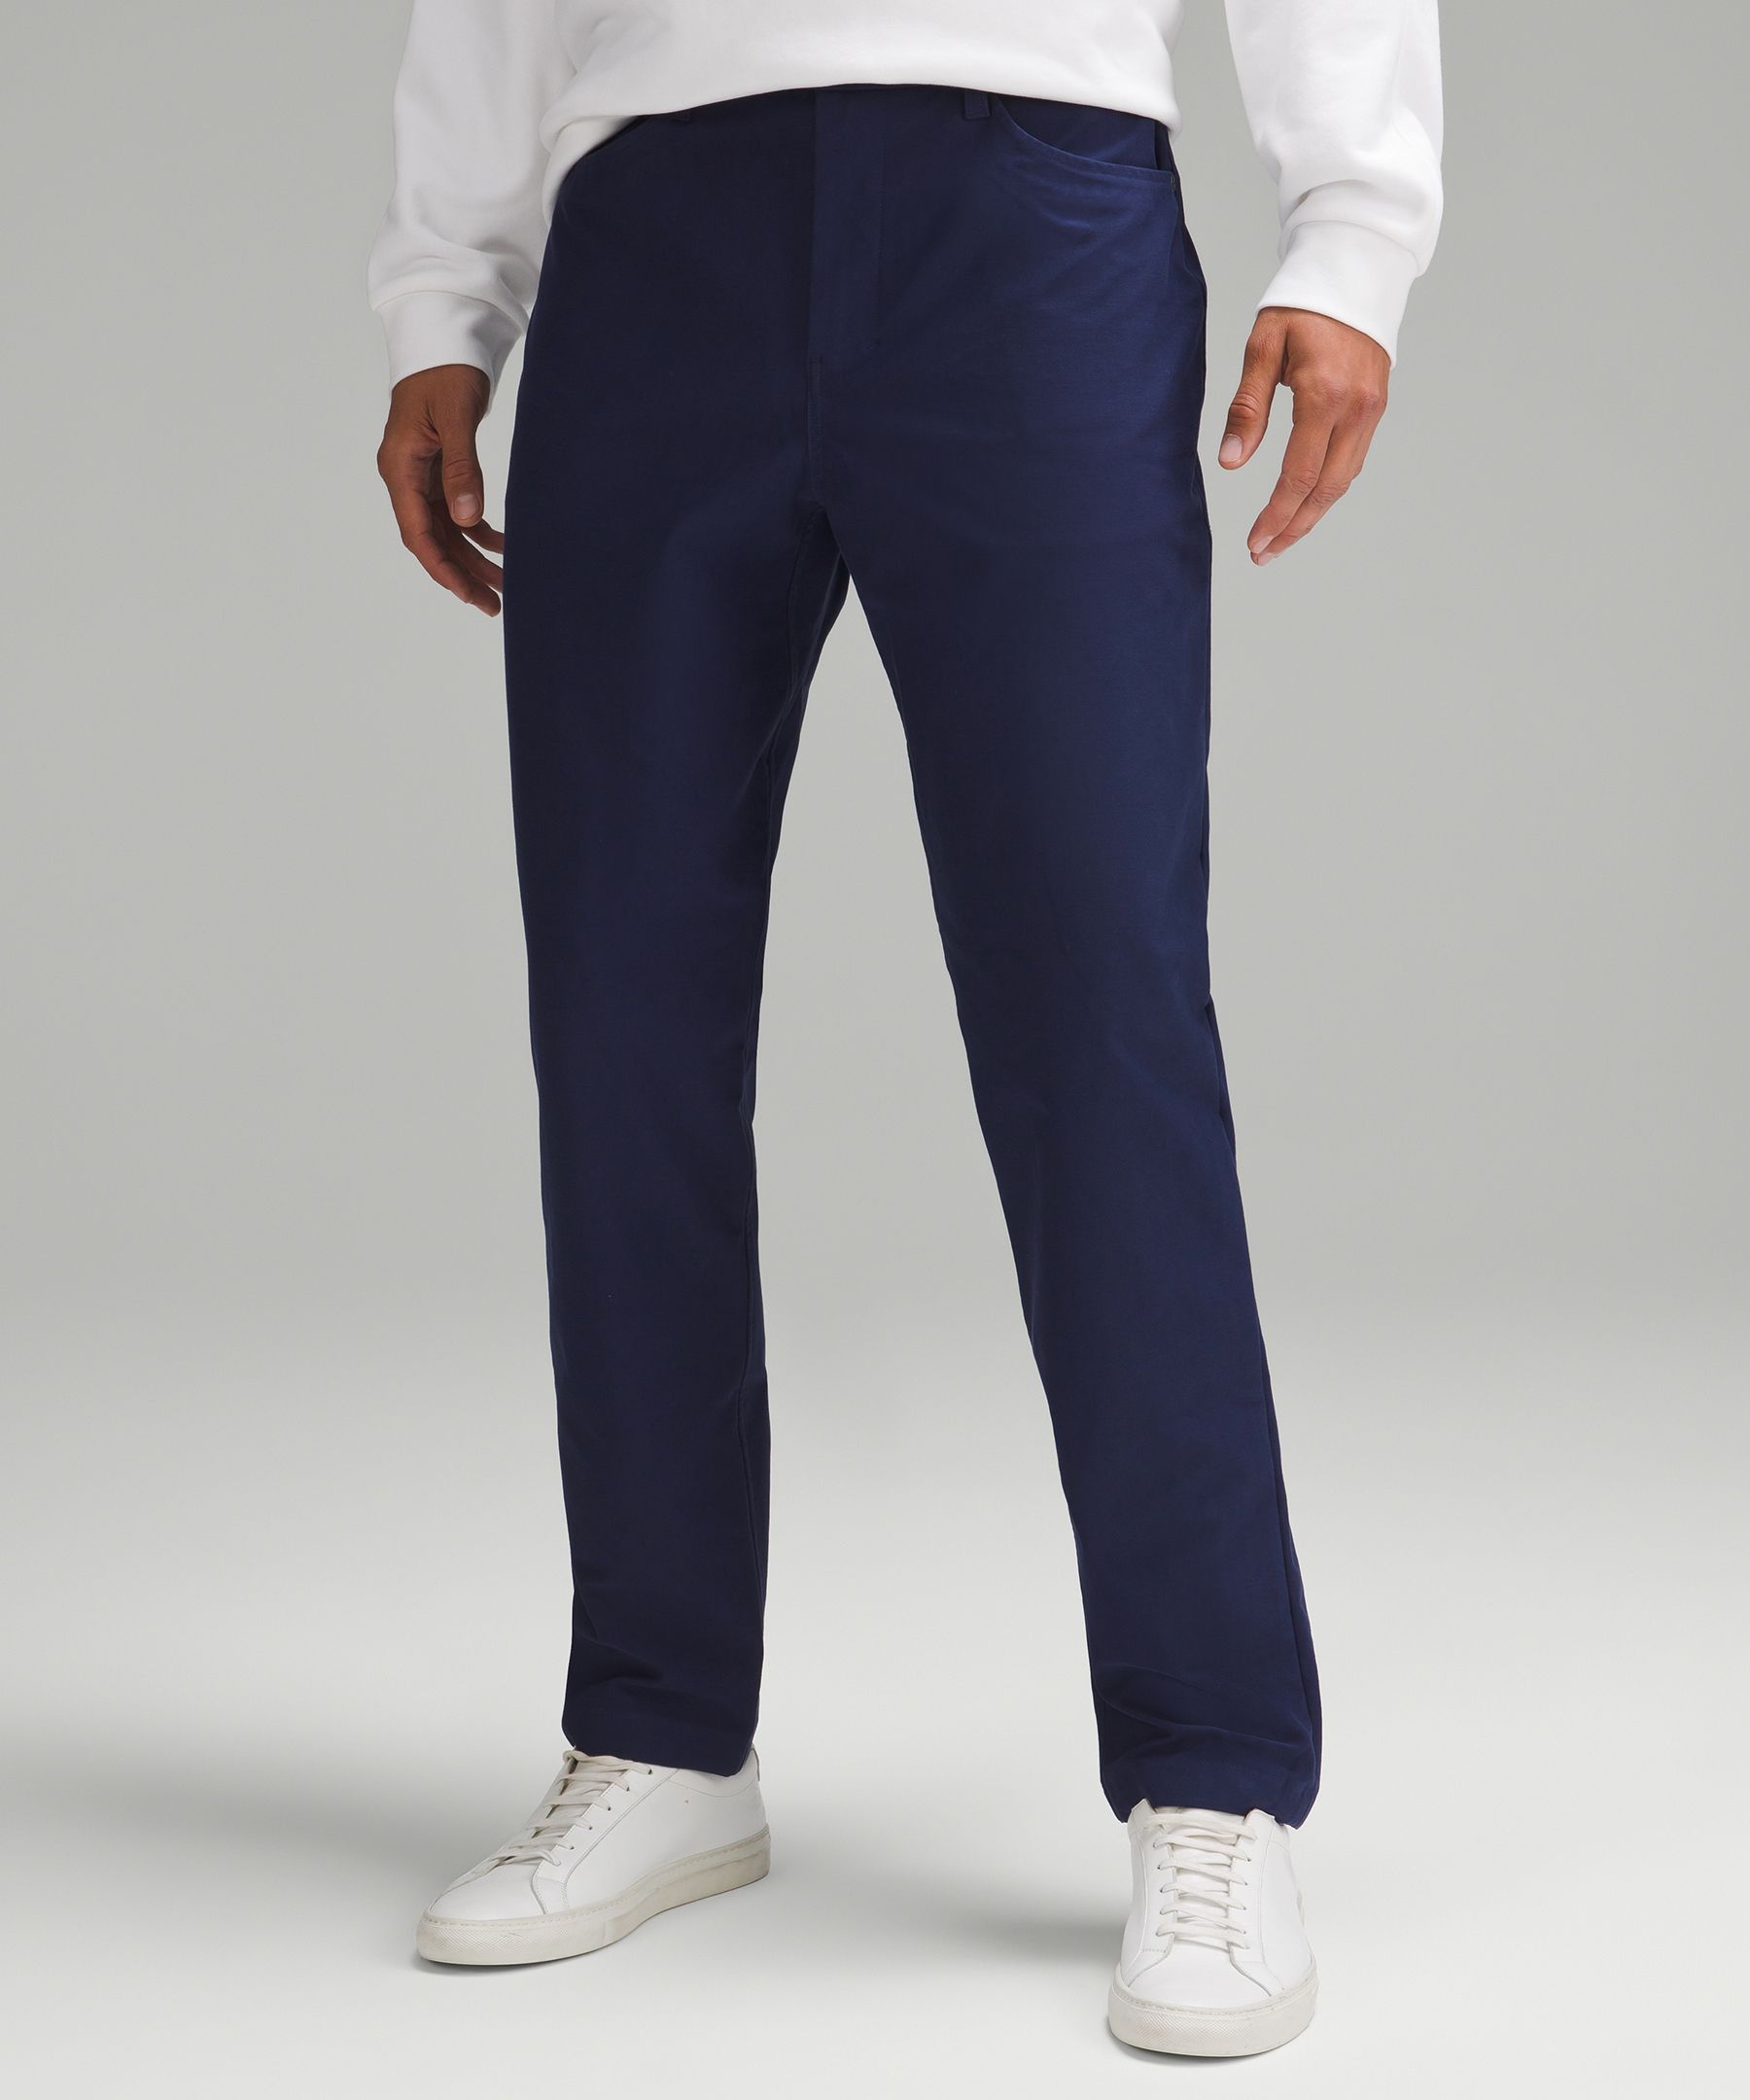 ABC Classic-Fit 5 Pocket Pant 34L *Utilitech, Men's Trousers